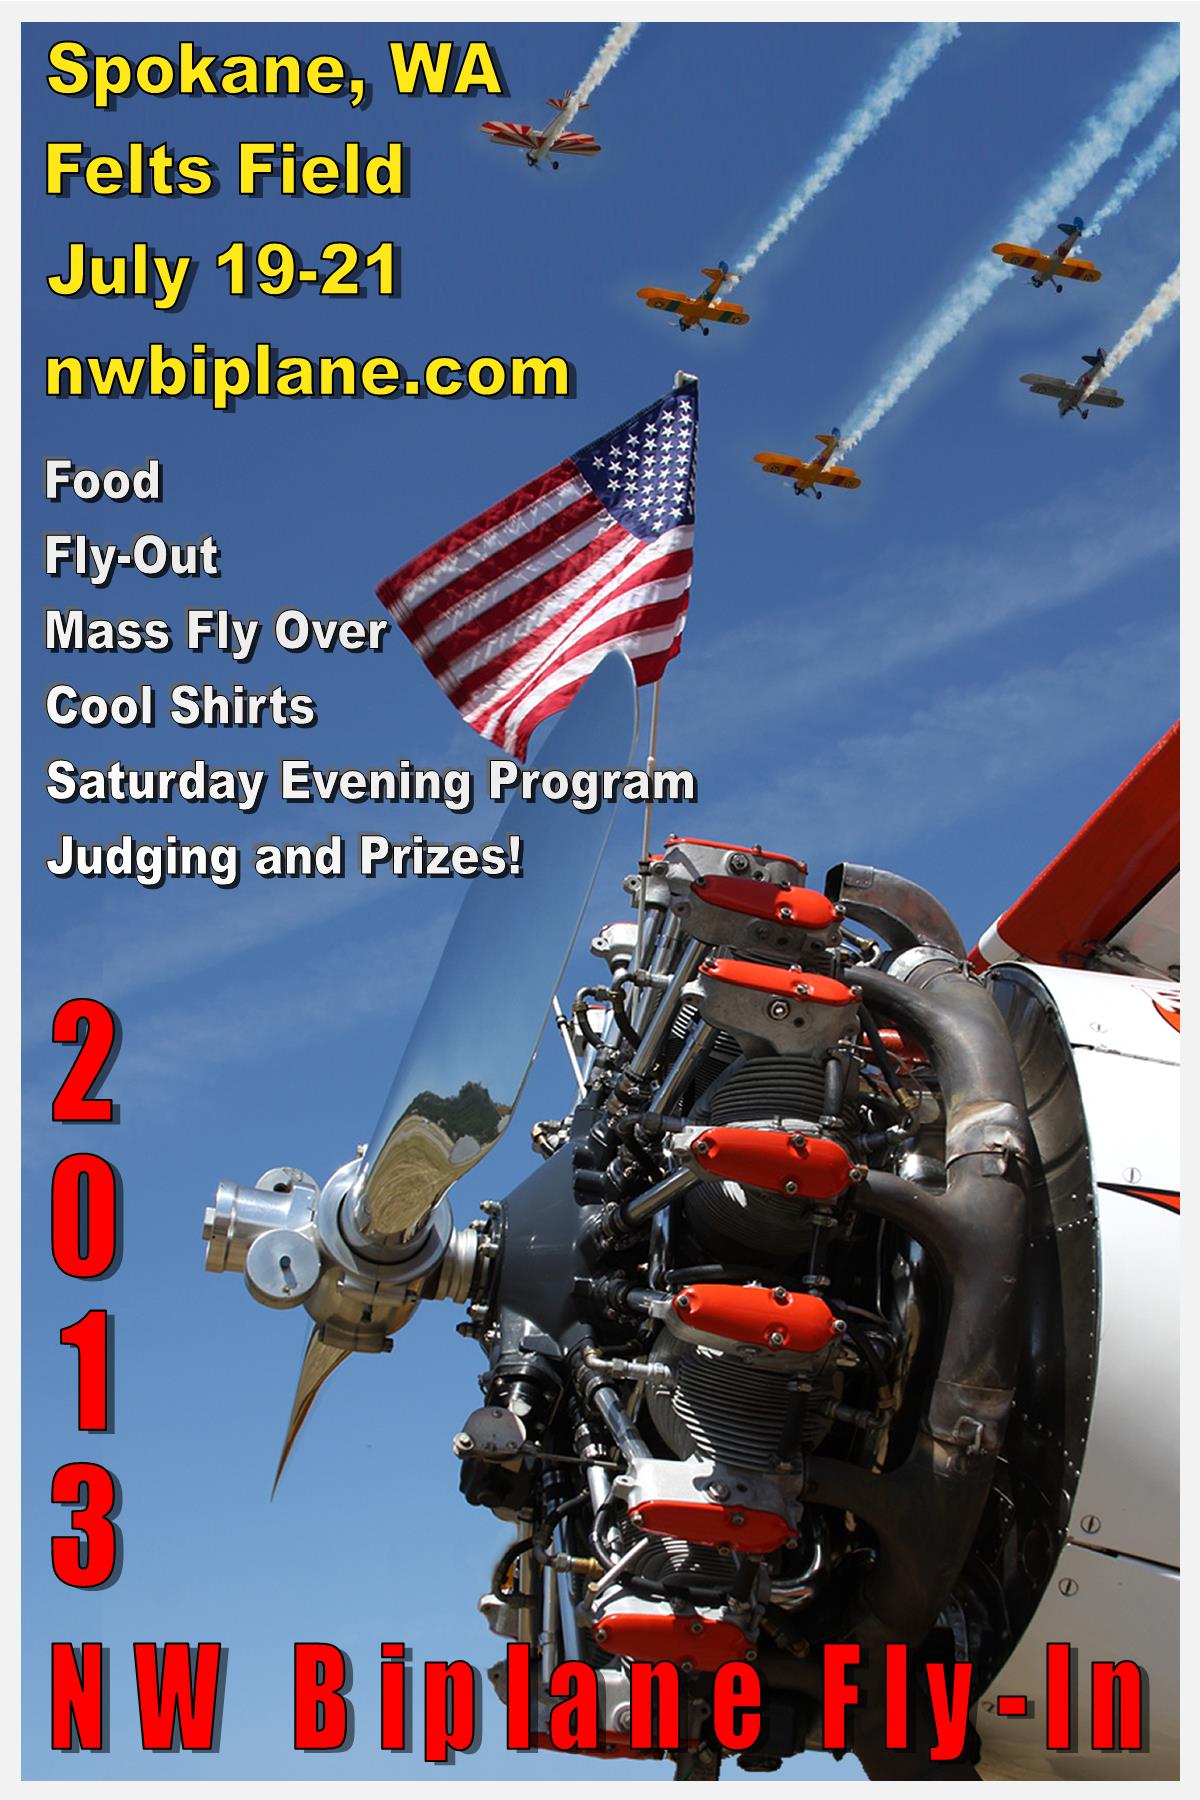 2013 NW Biplane Fly-In, Spokane Felts Field, WA